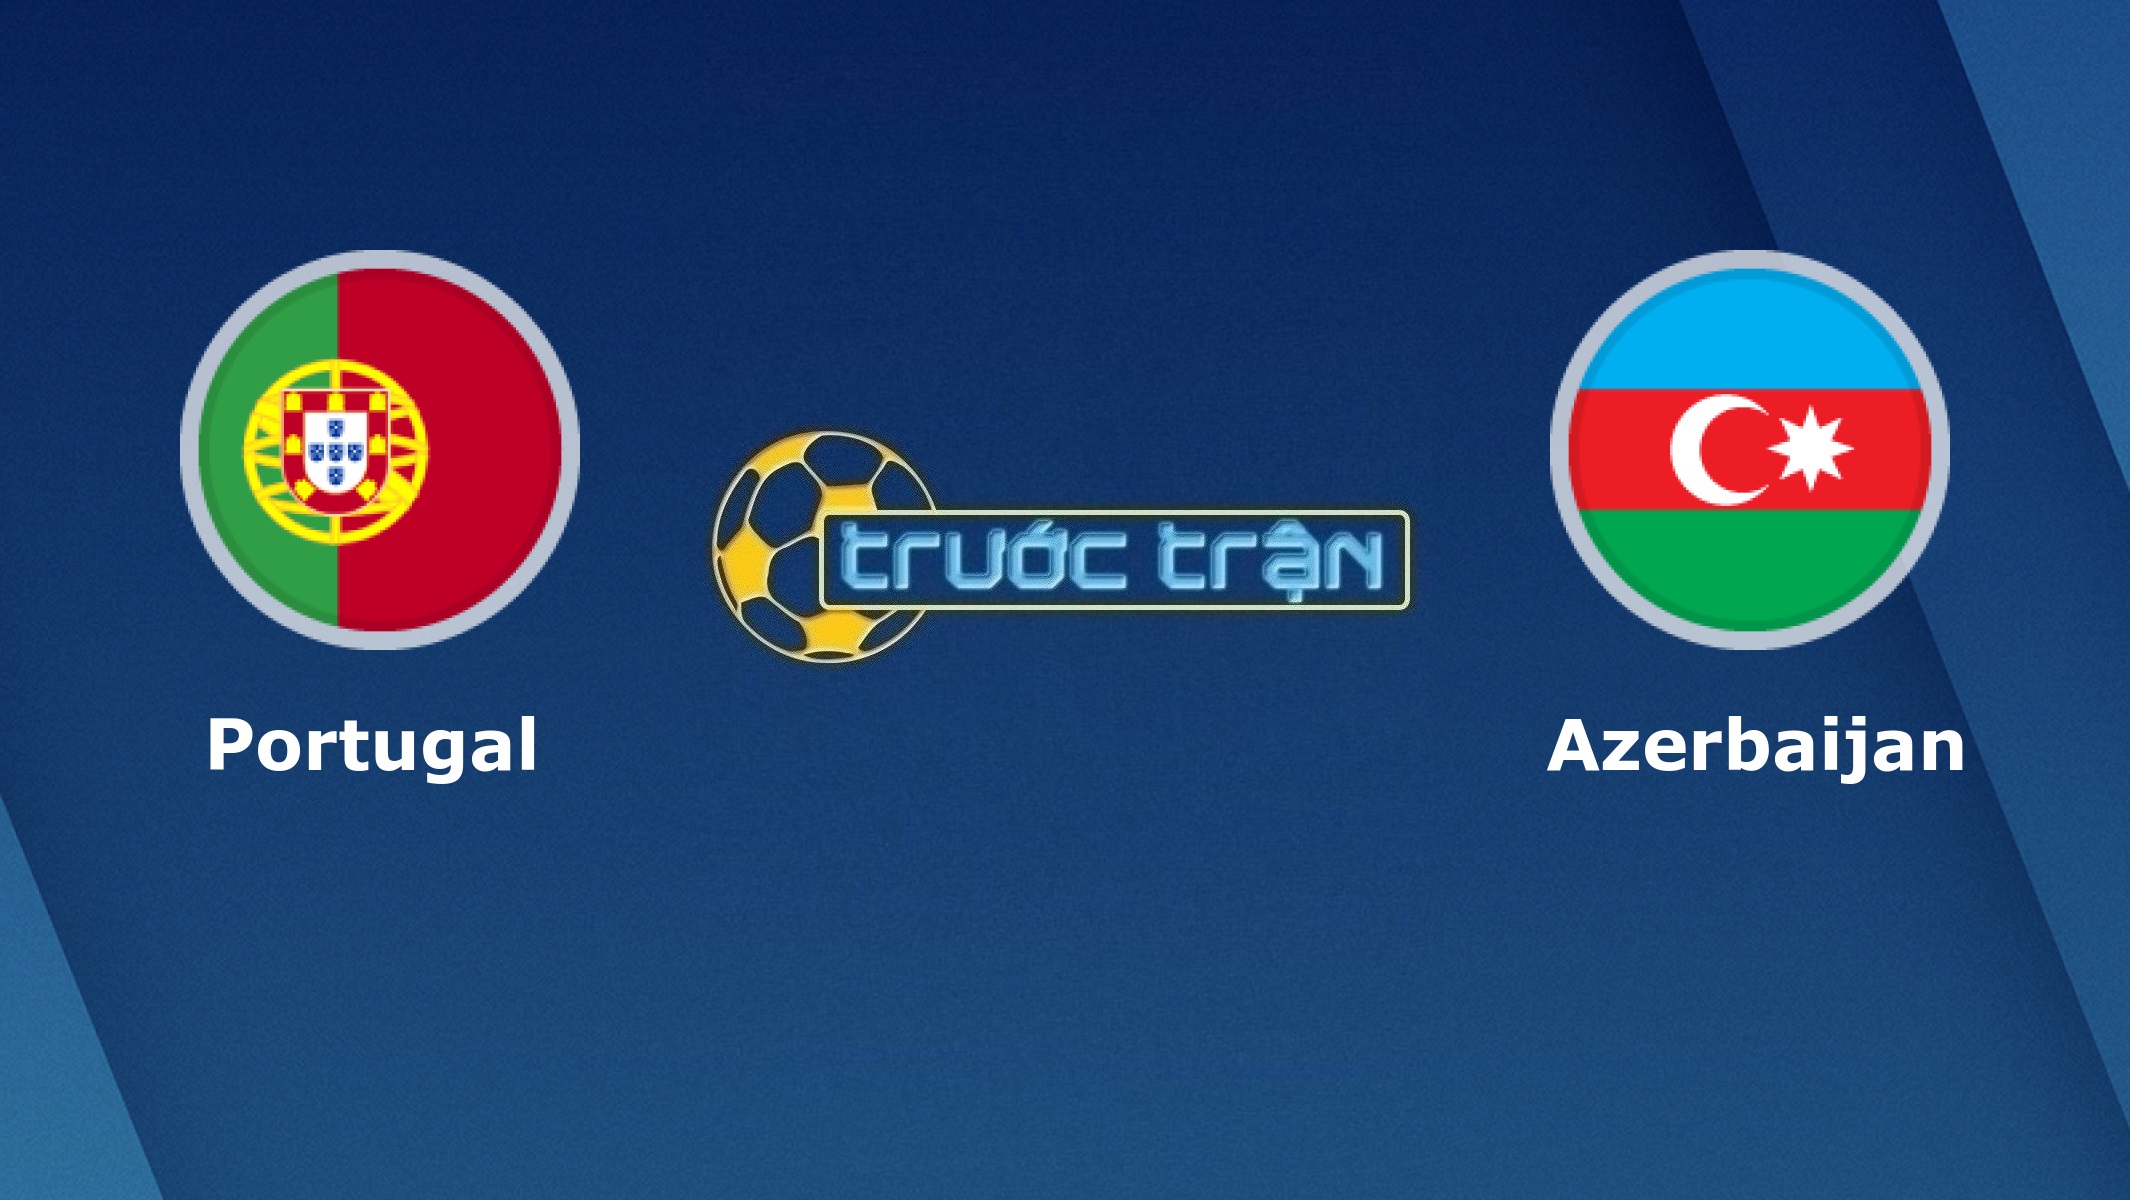 Bồ Đào Nha vs Azerbaijan – Tip kèo bóng đá hôm nay – 02h45 25/03/2021